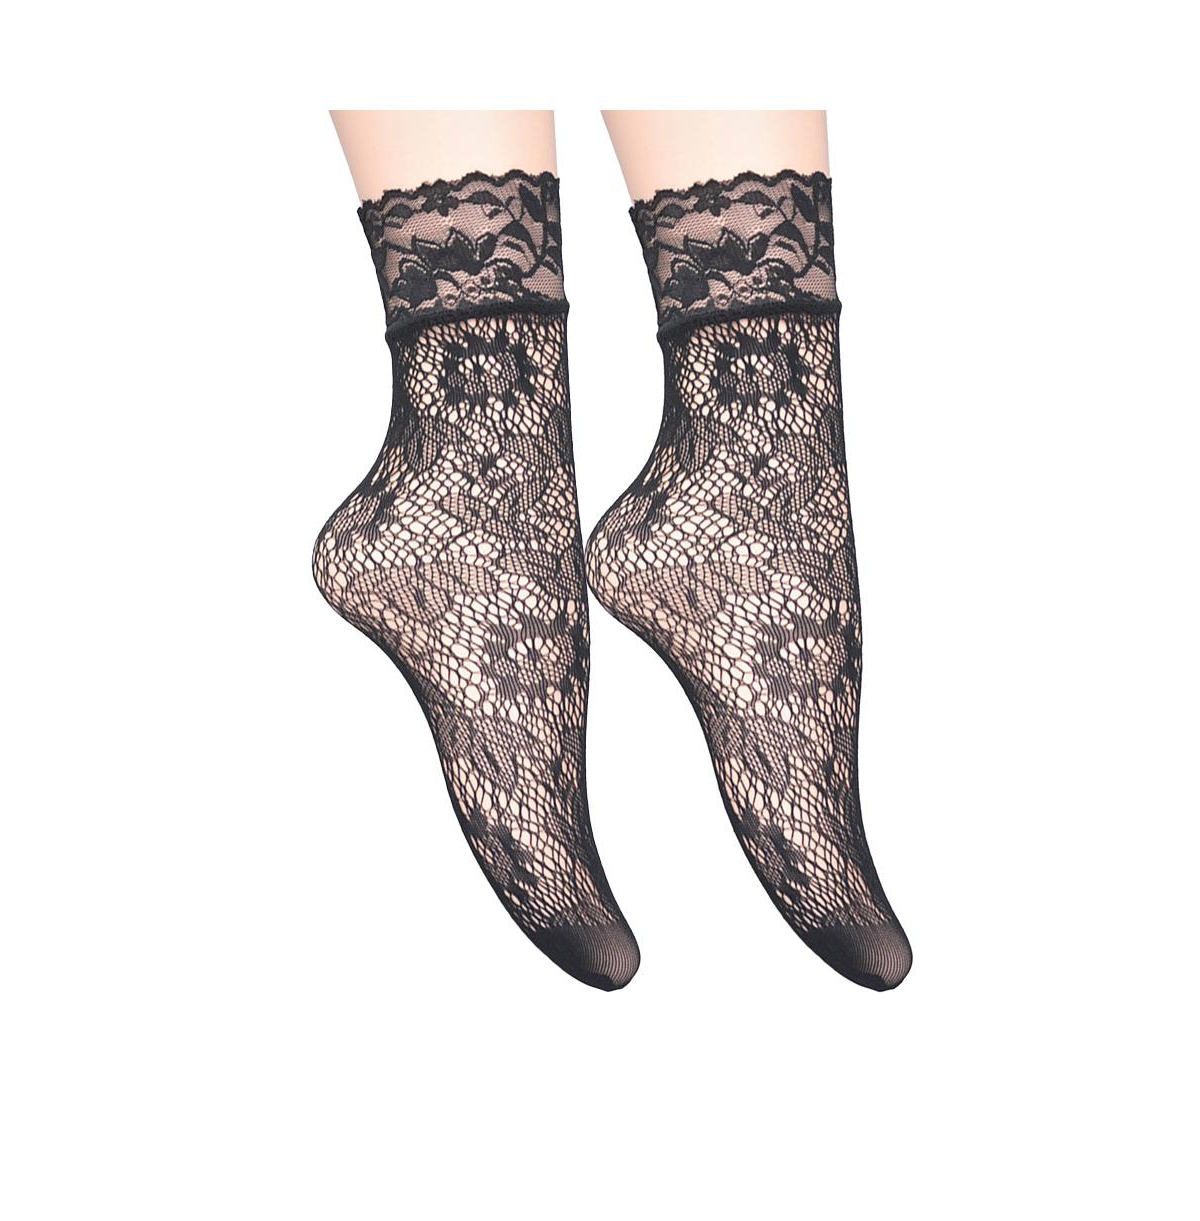 Women's Botanical Fishnet Socks - Black